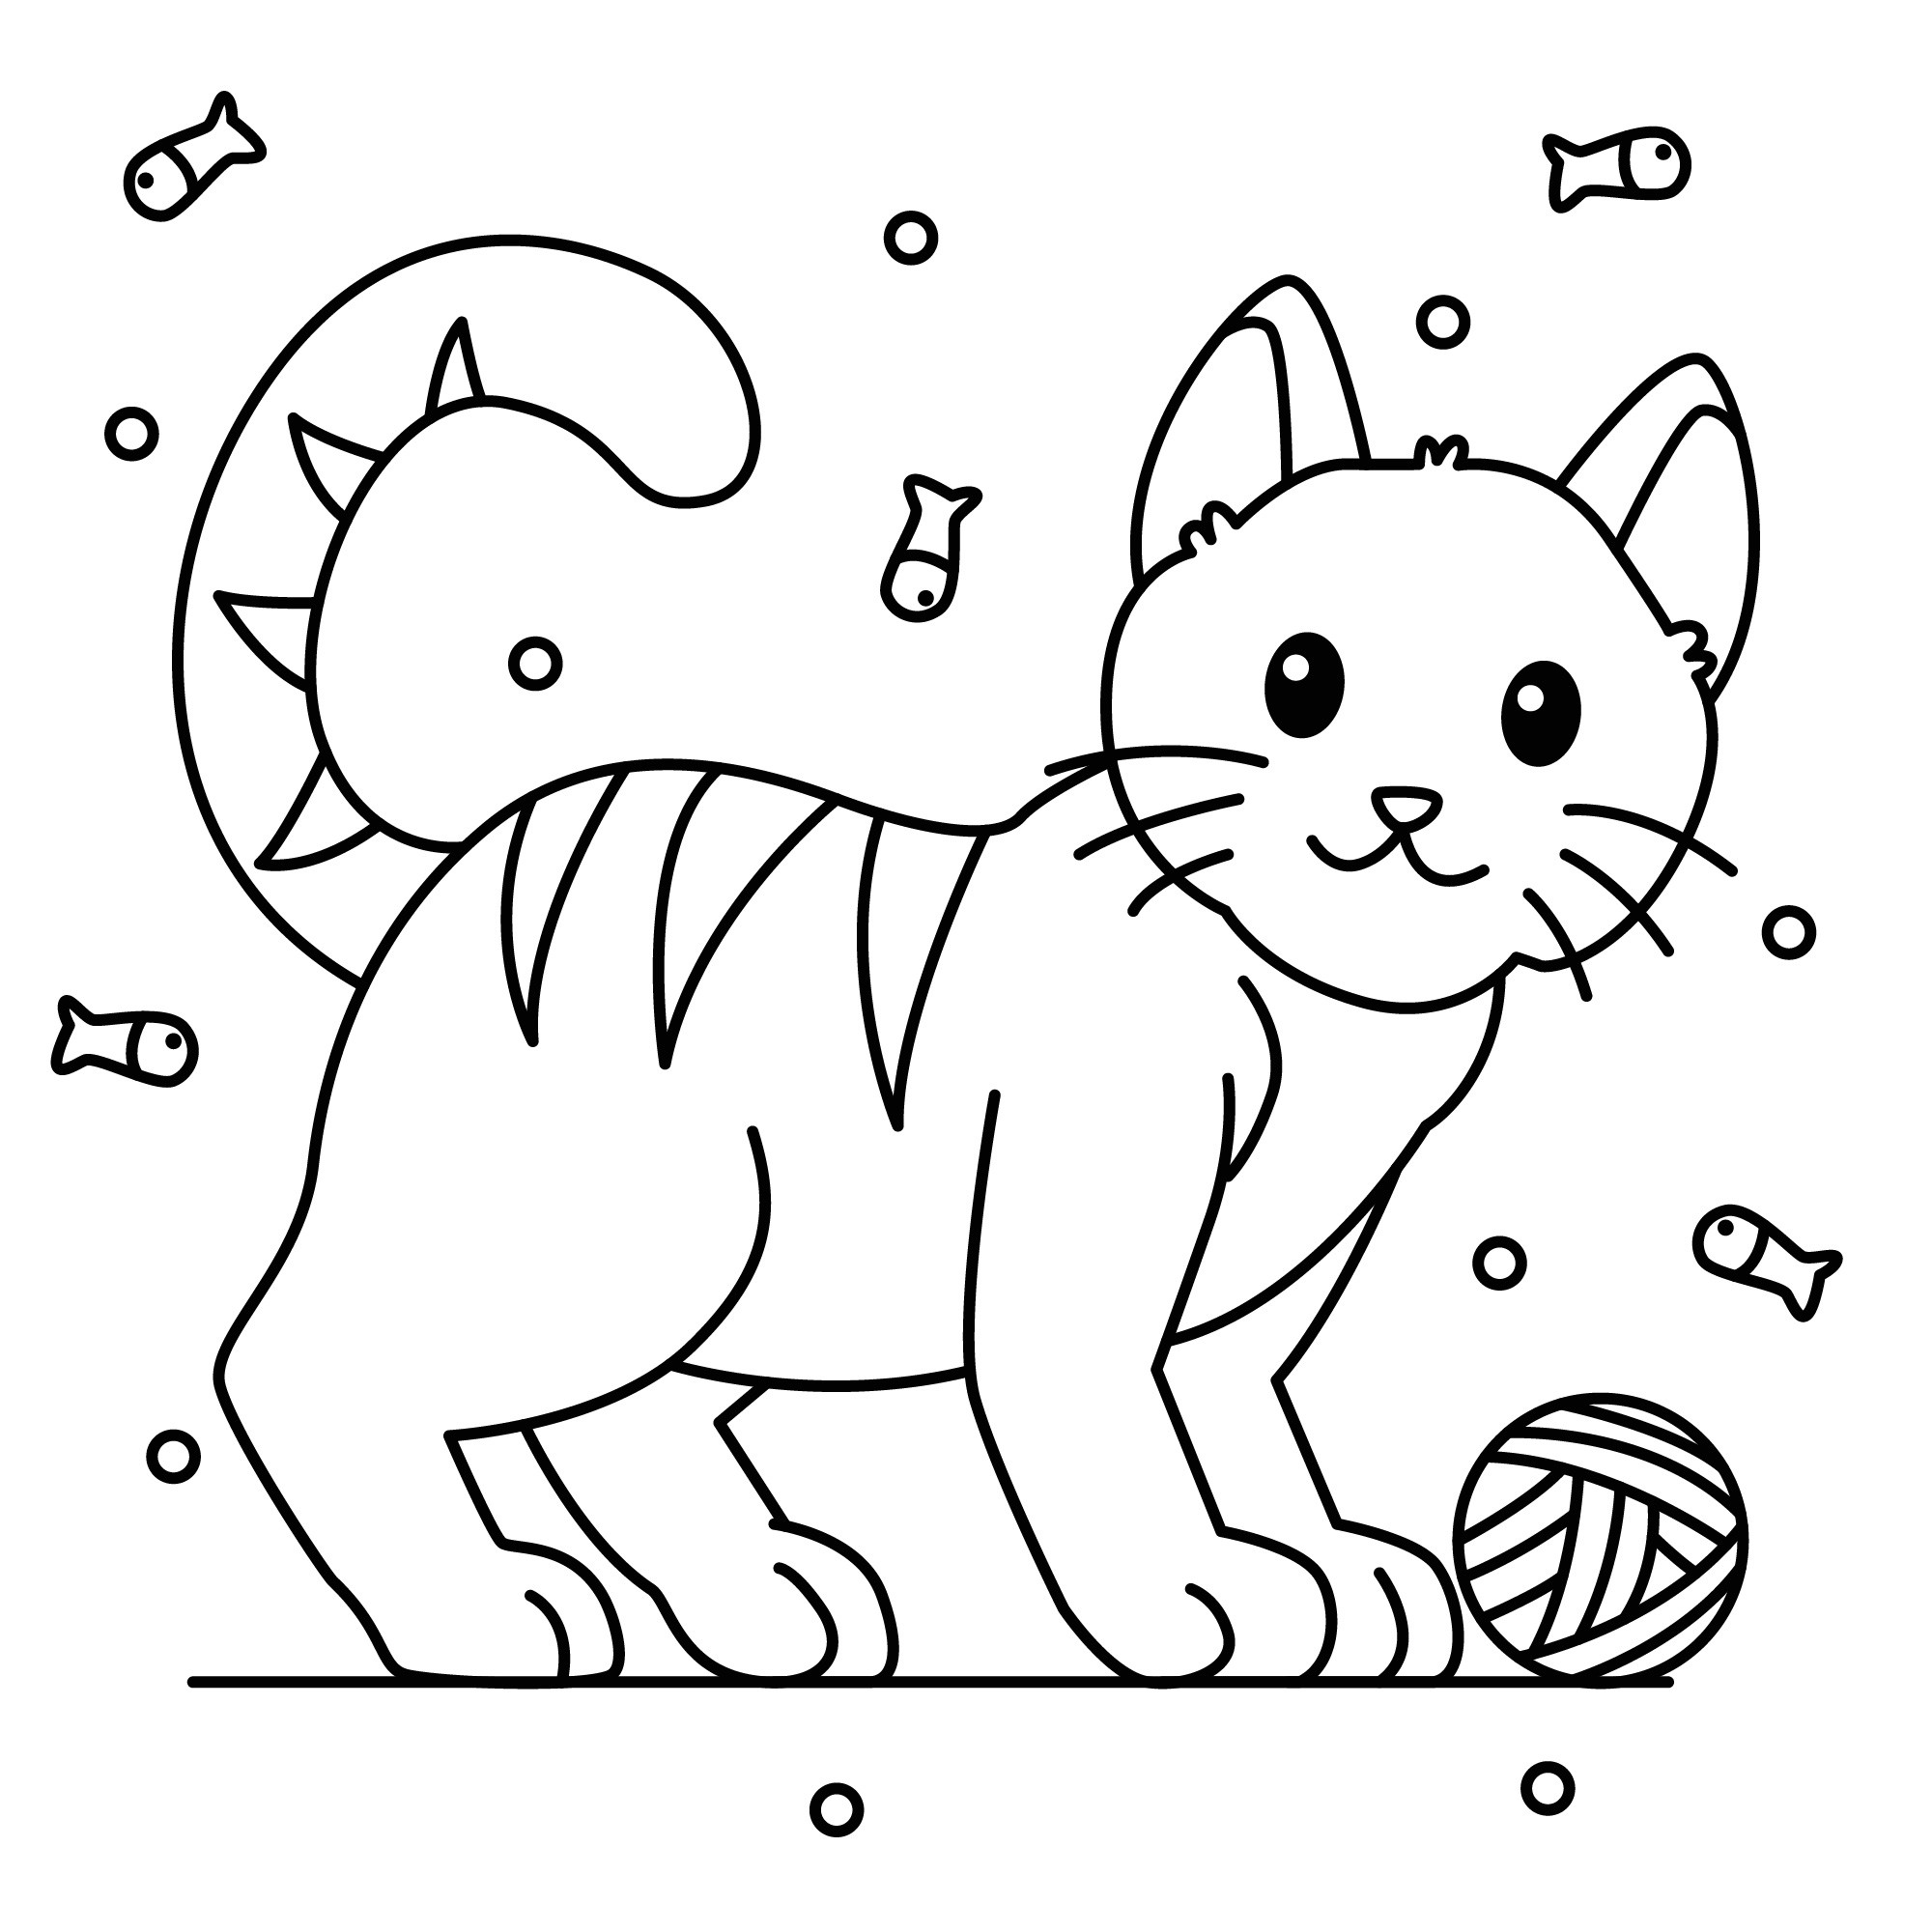 Раскраска для детей: мечты котенка с клубком и рыбками